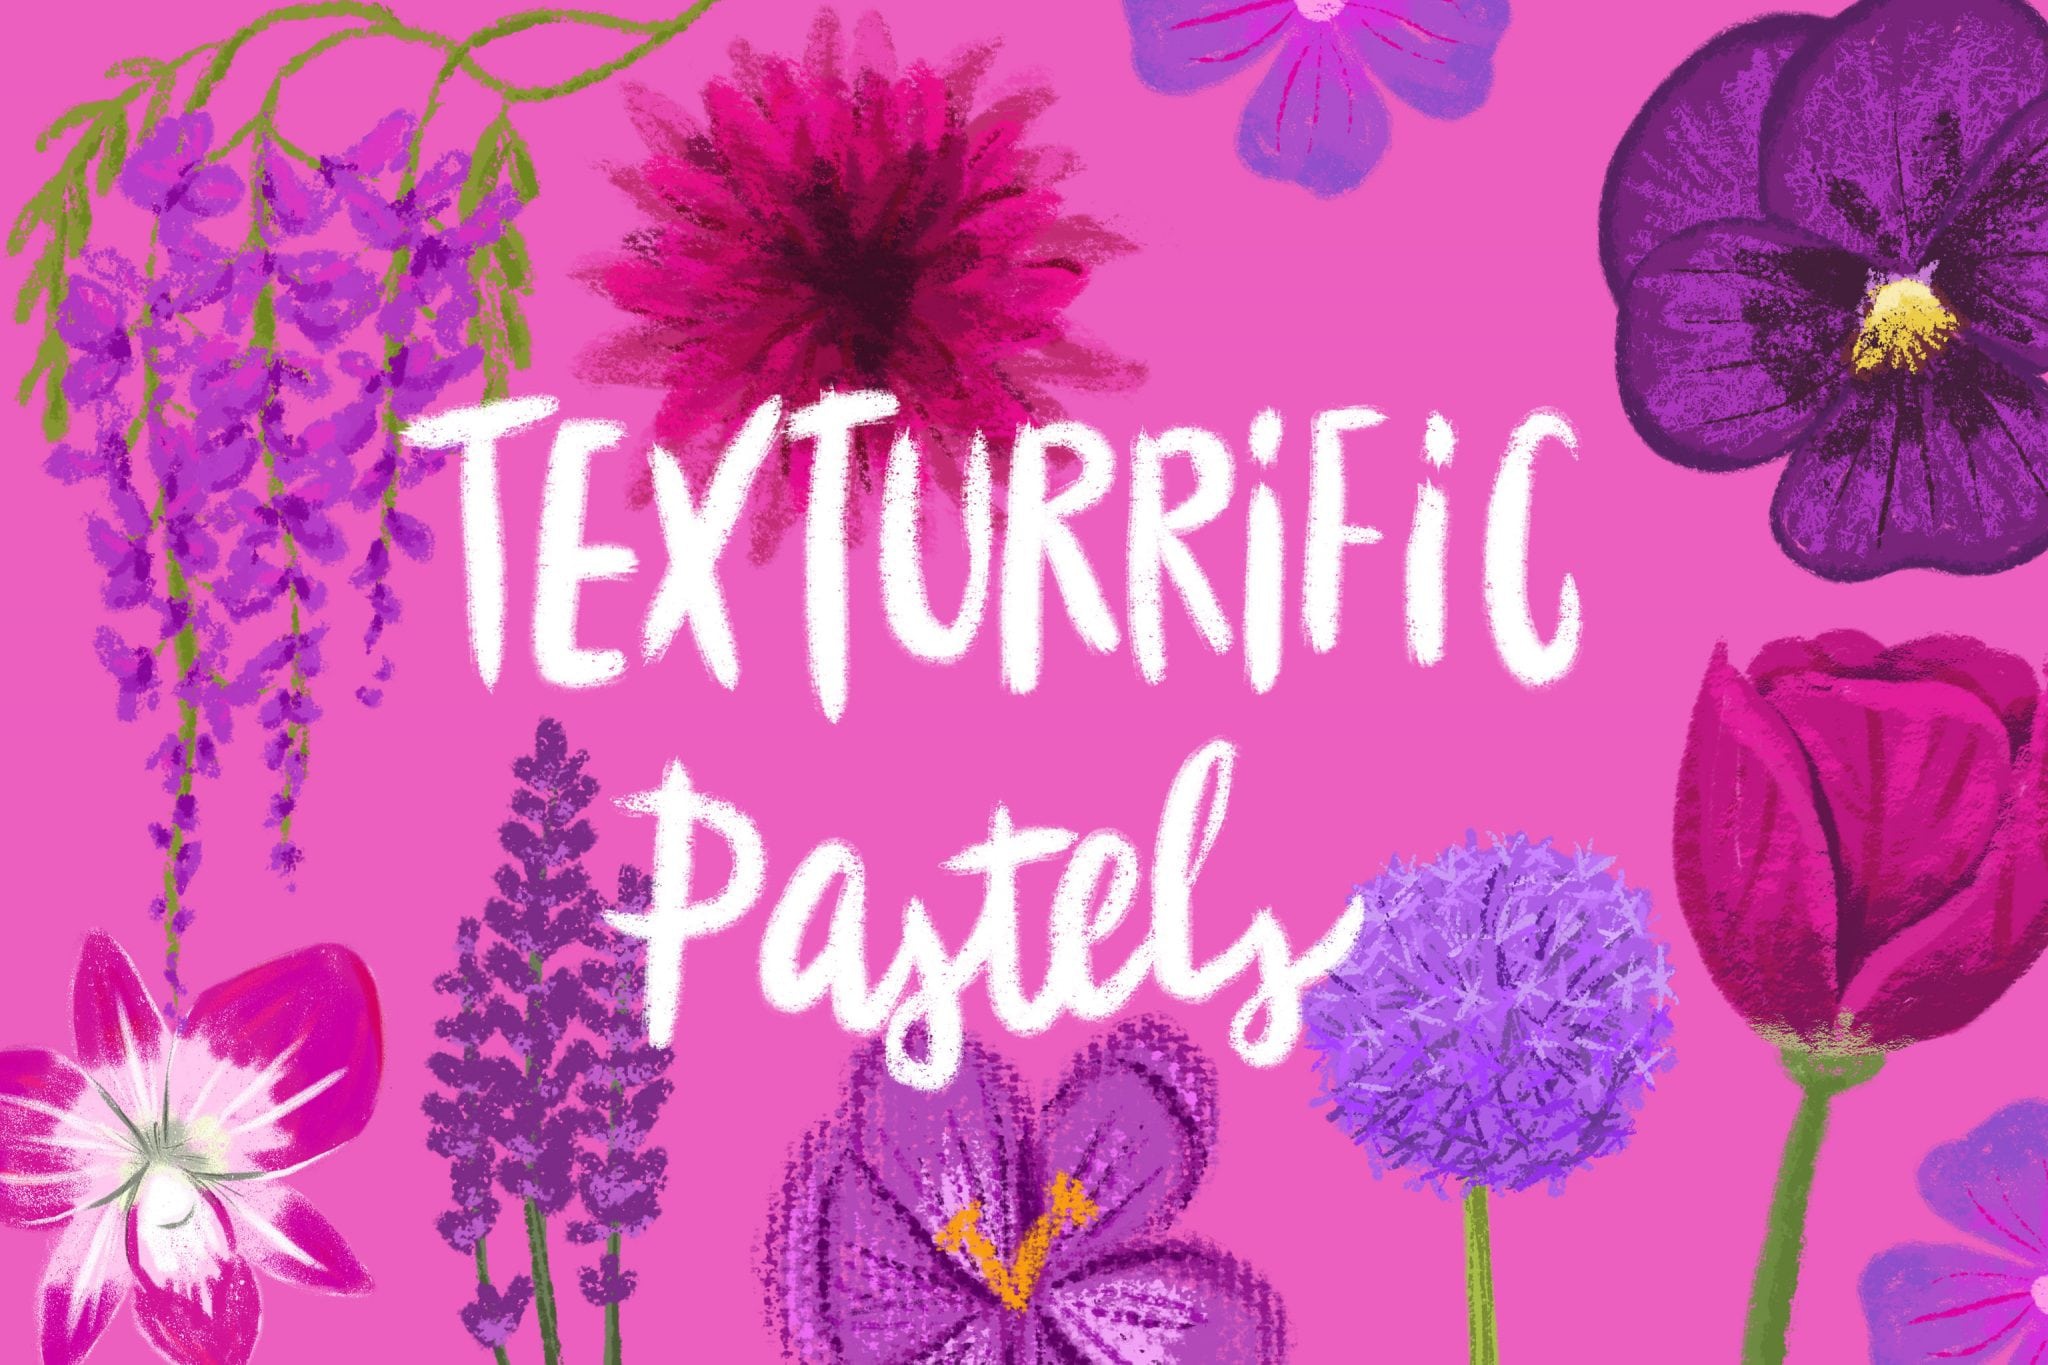 Texturiffic_Pastels_-_Procreate_Brushes